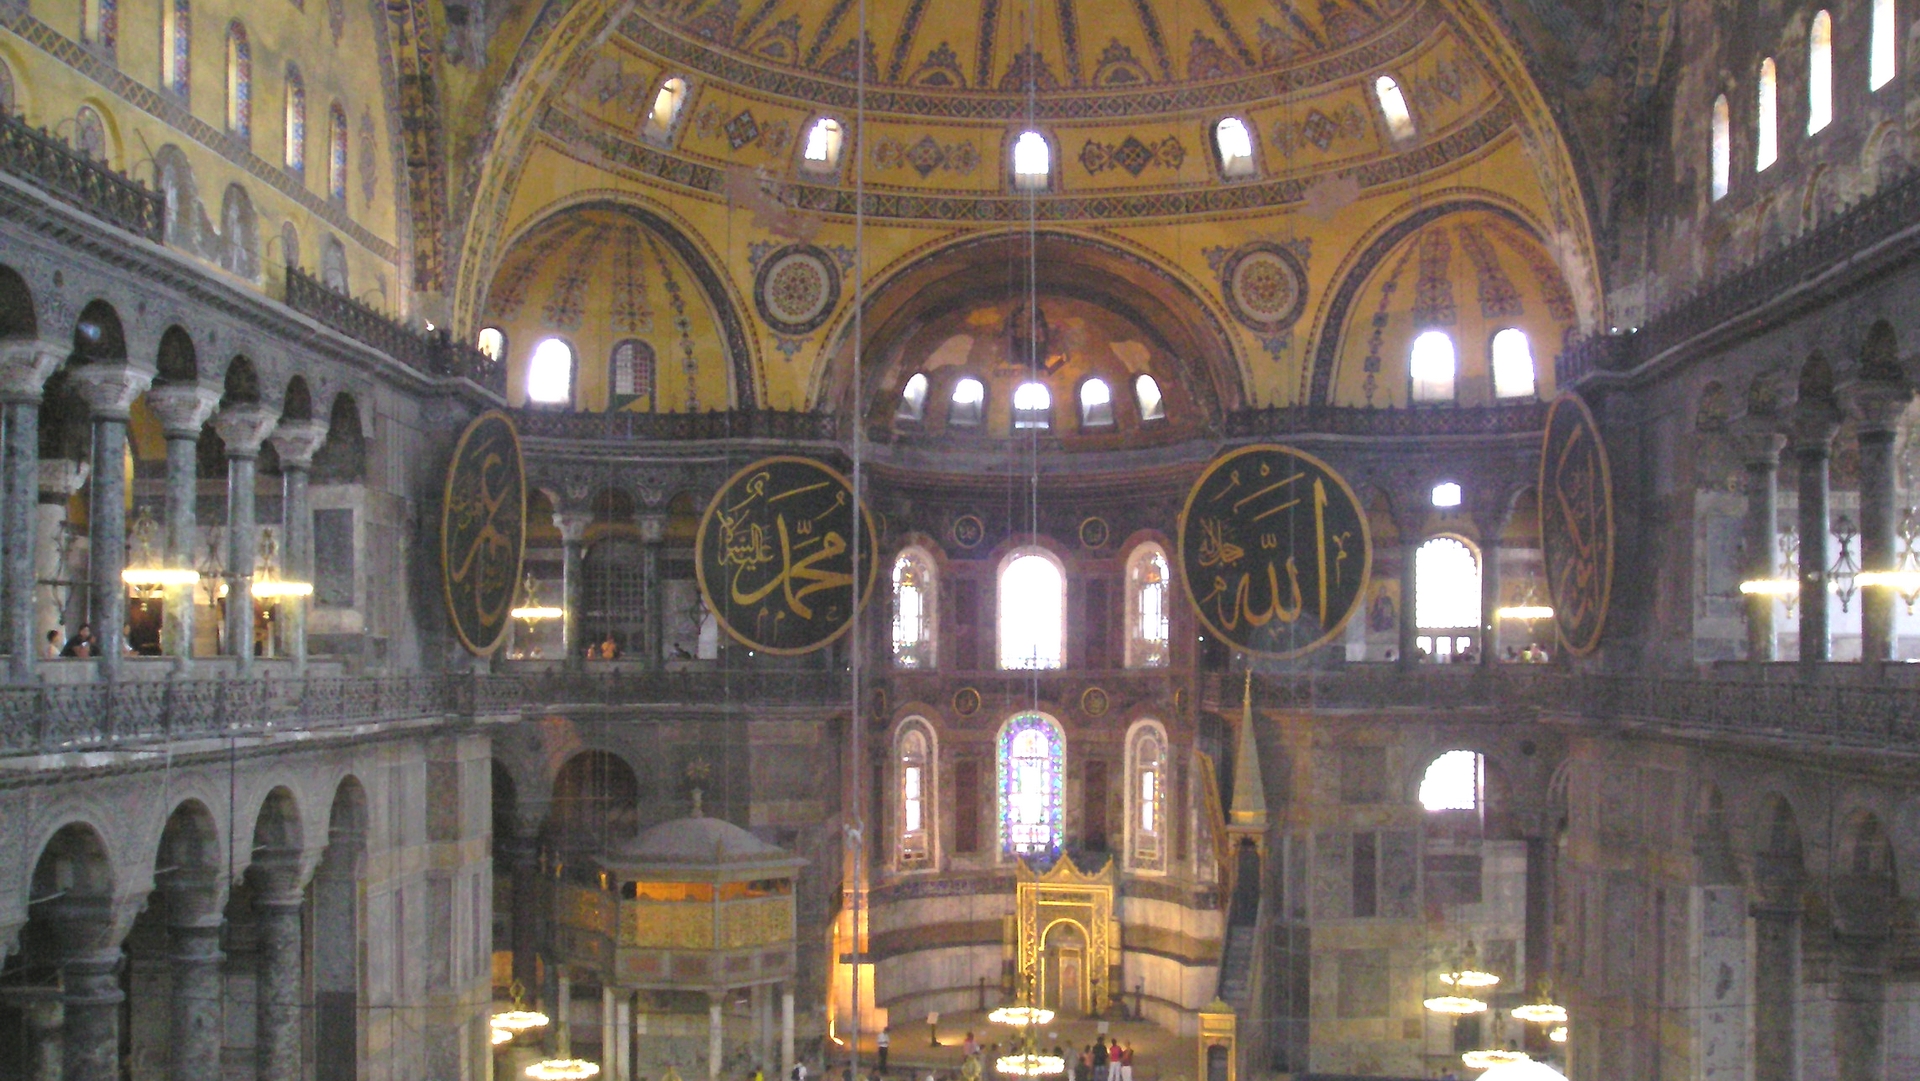 L'intérieur de la basilique Sainte-Sophie de Constantinople | wikimedia commons jéjé9000 CC BY-SA 3.0